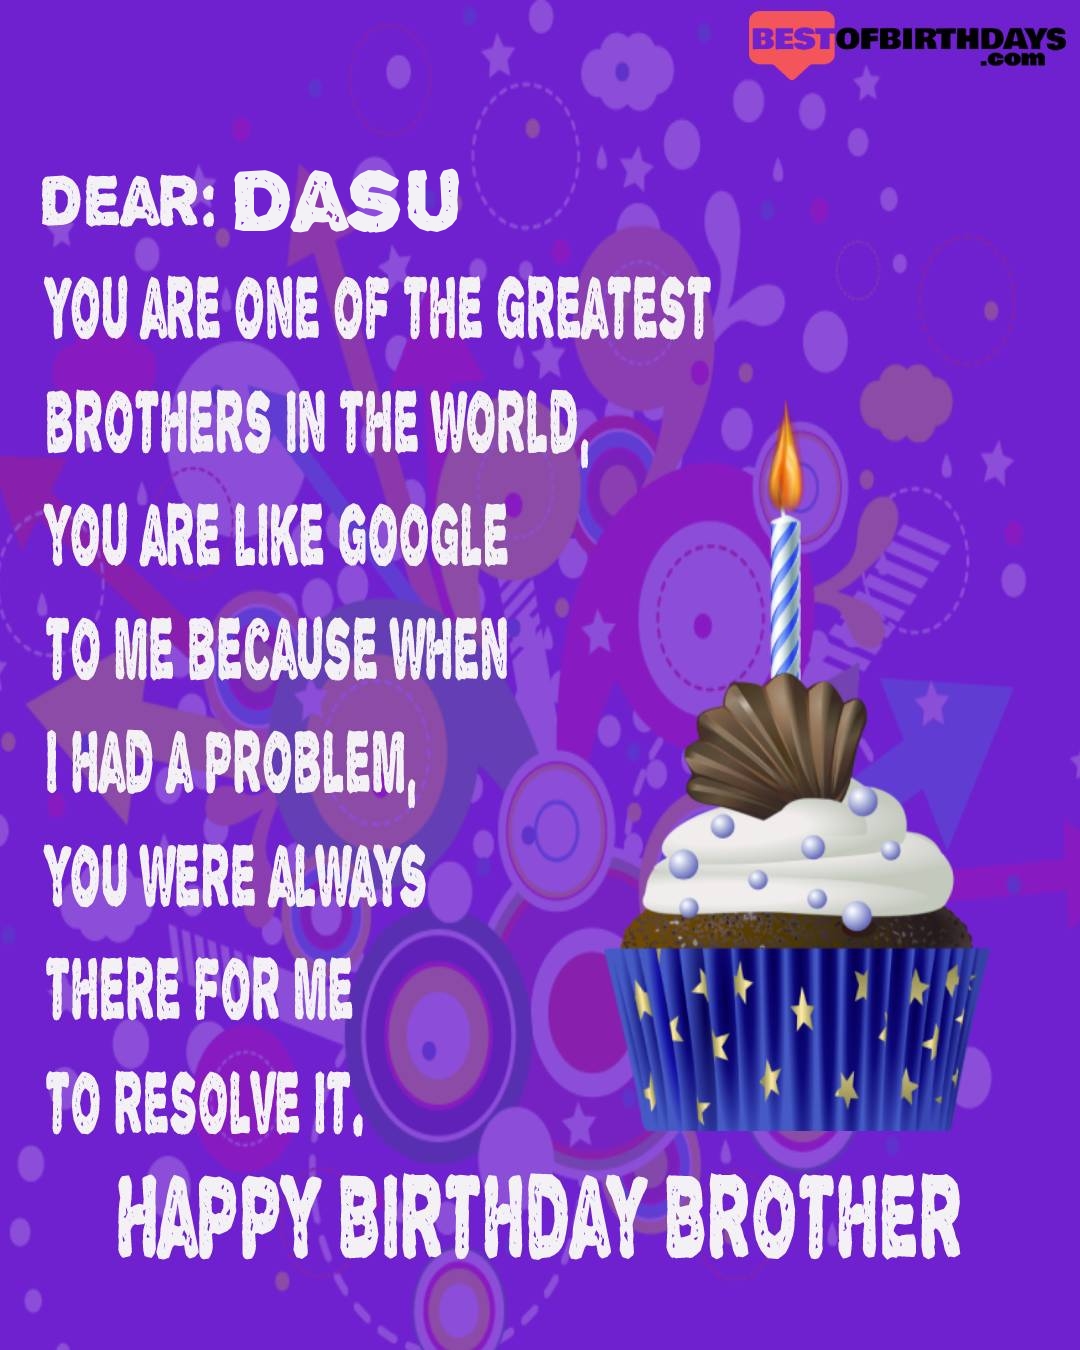 Happy birthday dasu bhai brother bro